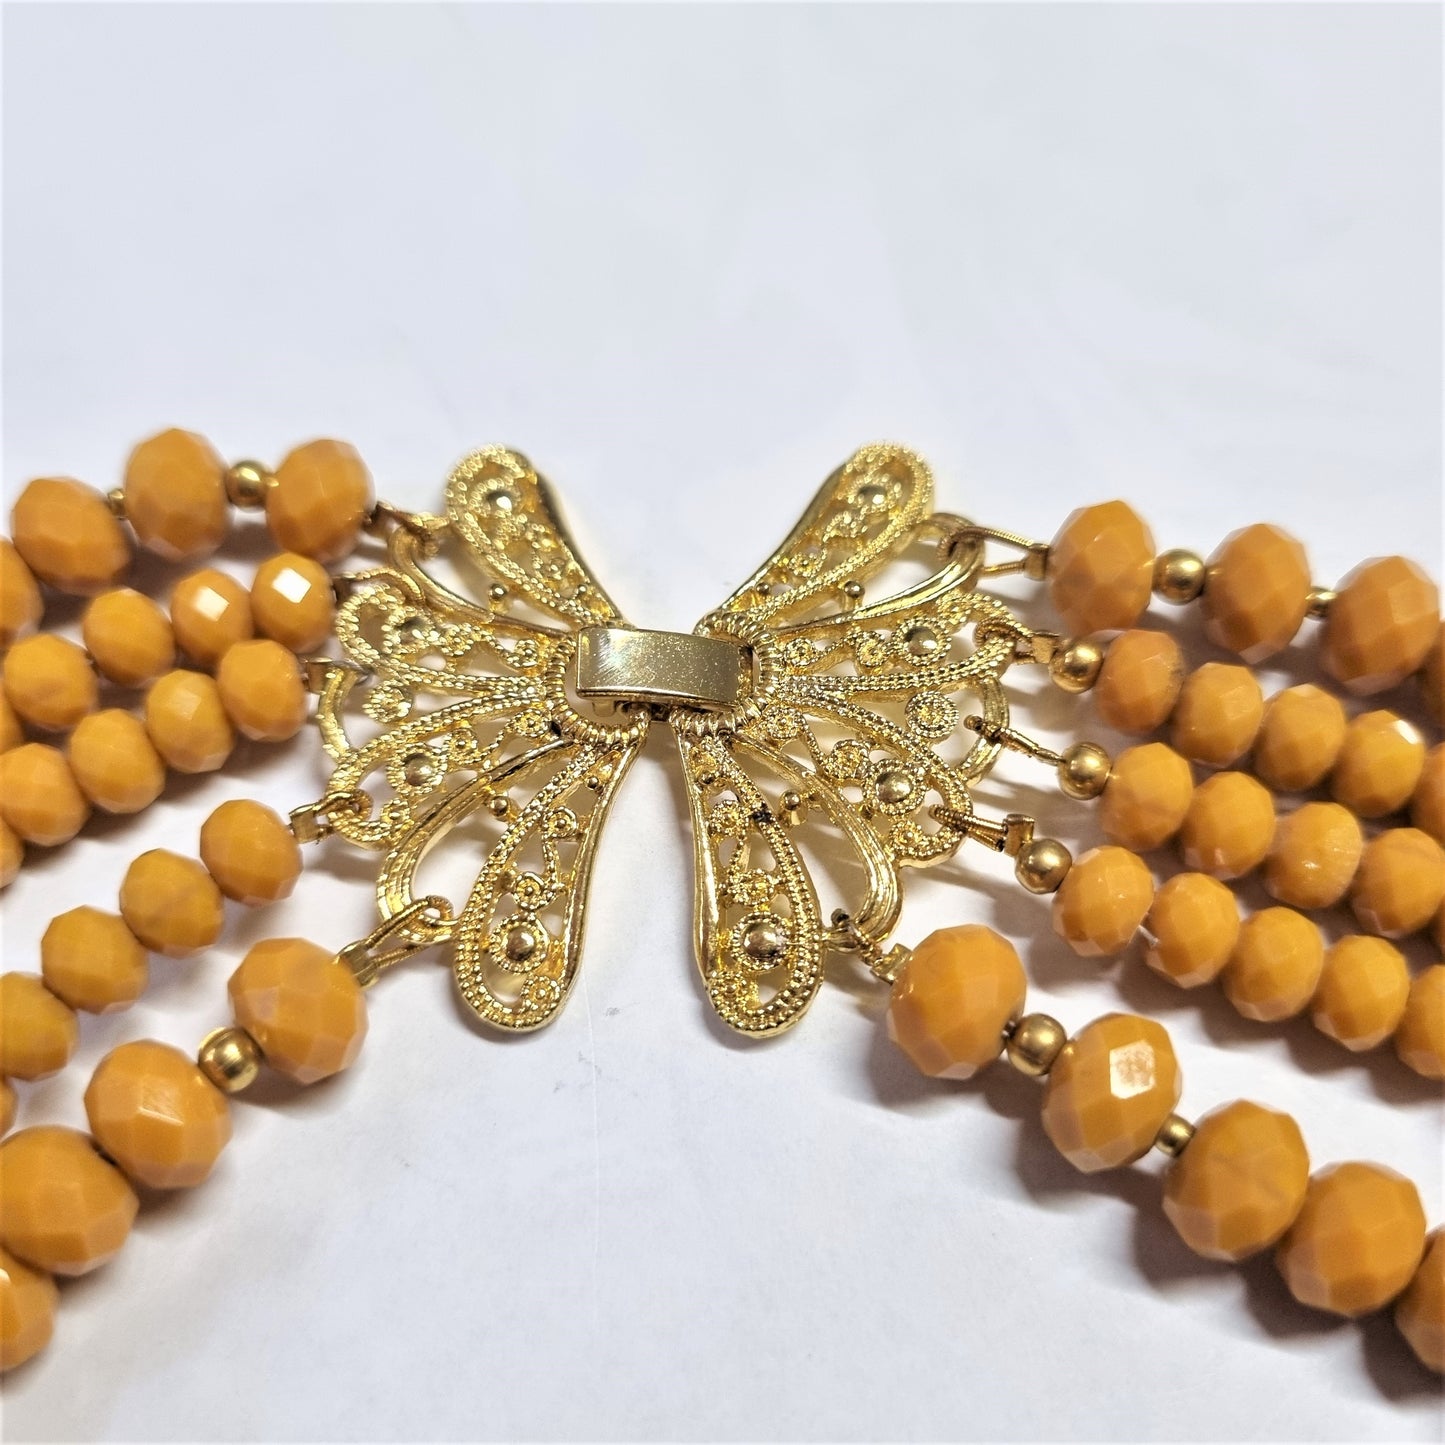 Collana I CRISTALLI .091 cinque fili di cristalli colore giallo intenso, chiusura a farfalla filigranata dorata.